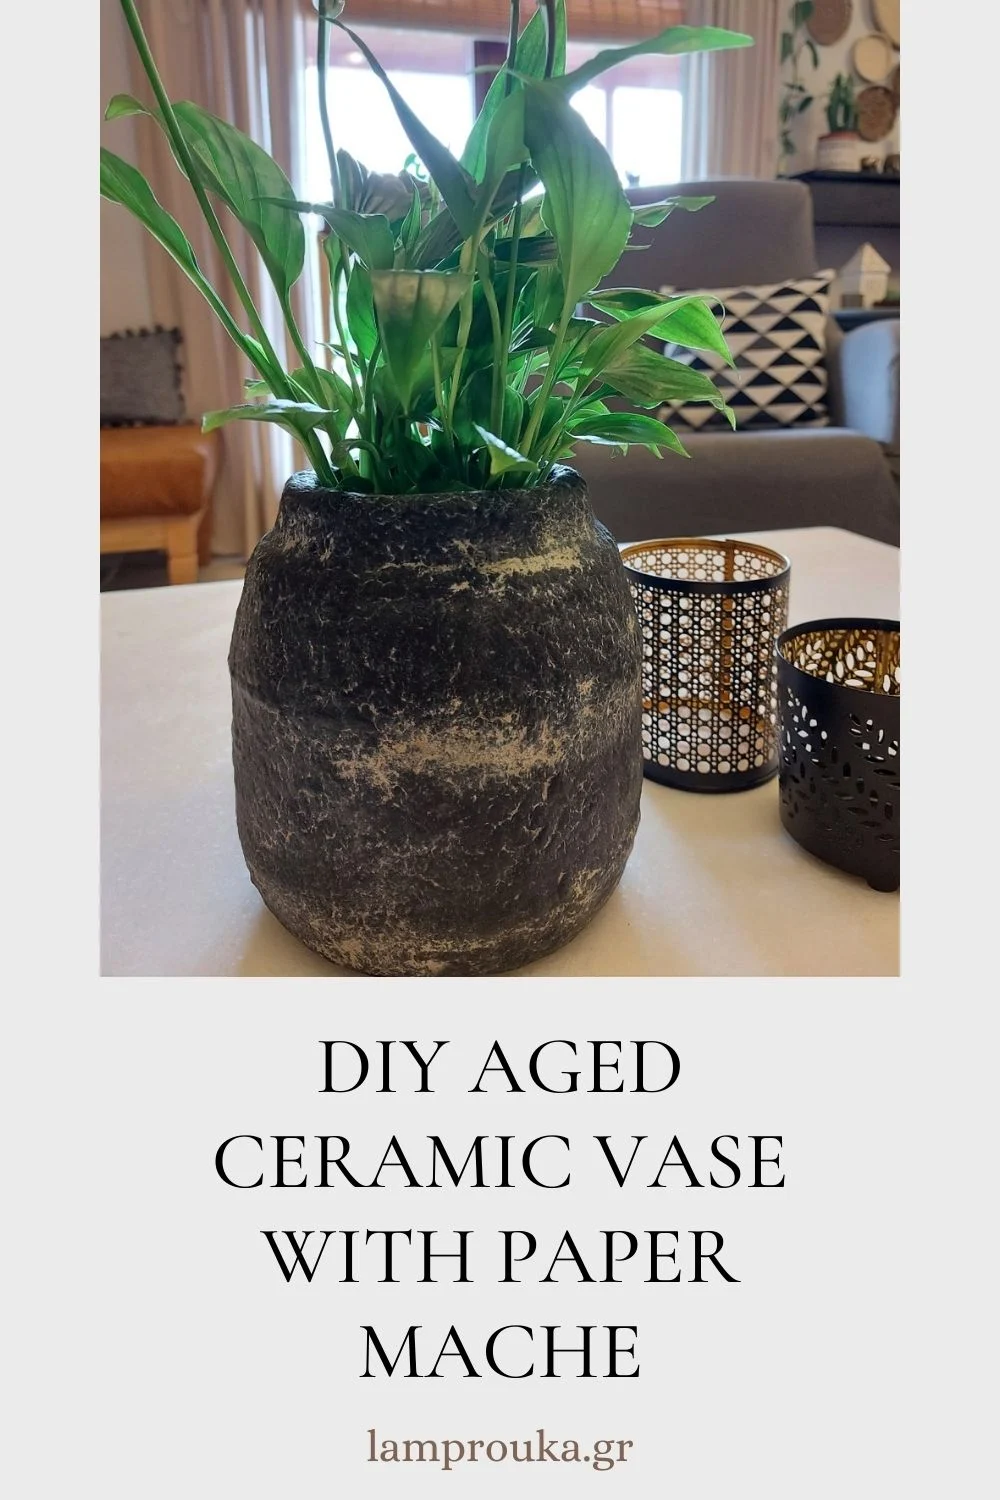 DIY aged ceramic vase with paper mache